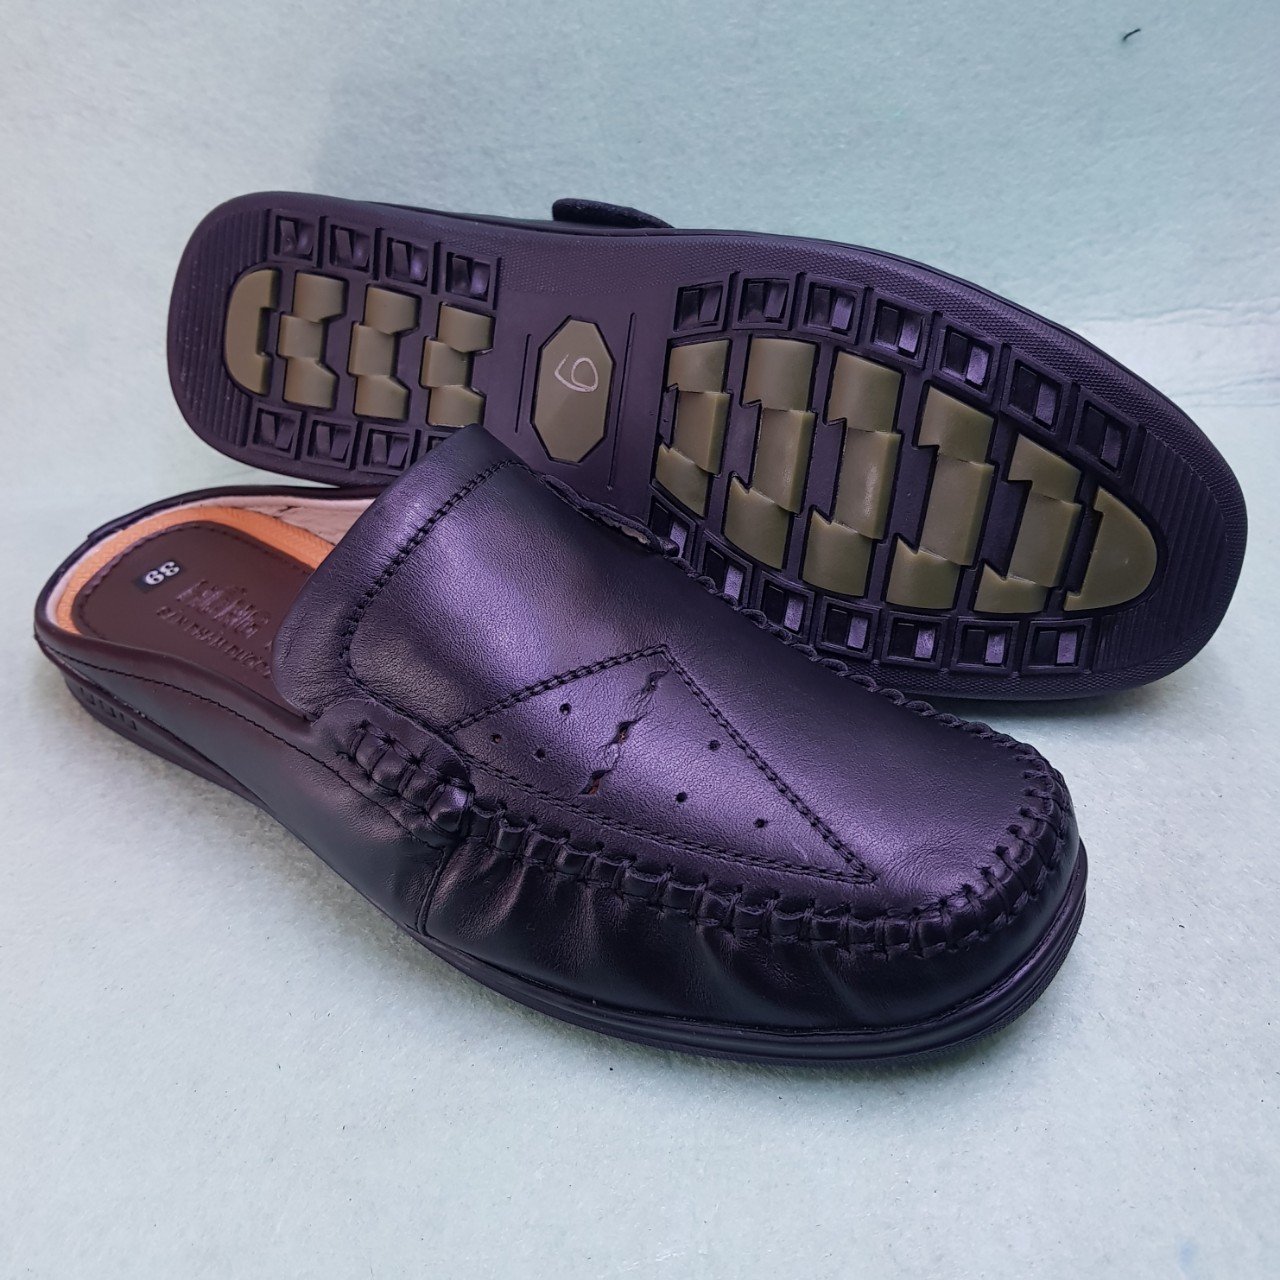 điạ chỉ chuyên phân phối bán buôn bỏ sỉ giày sabo nam hàng cao cấp giá gốc tận xưởng, bán sỉ giày dép cho đại lý và chợ đầu mối toàn quốc.